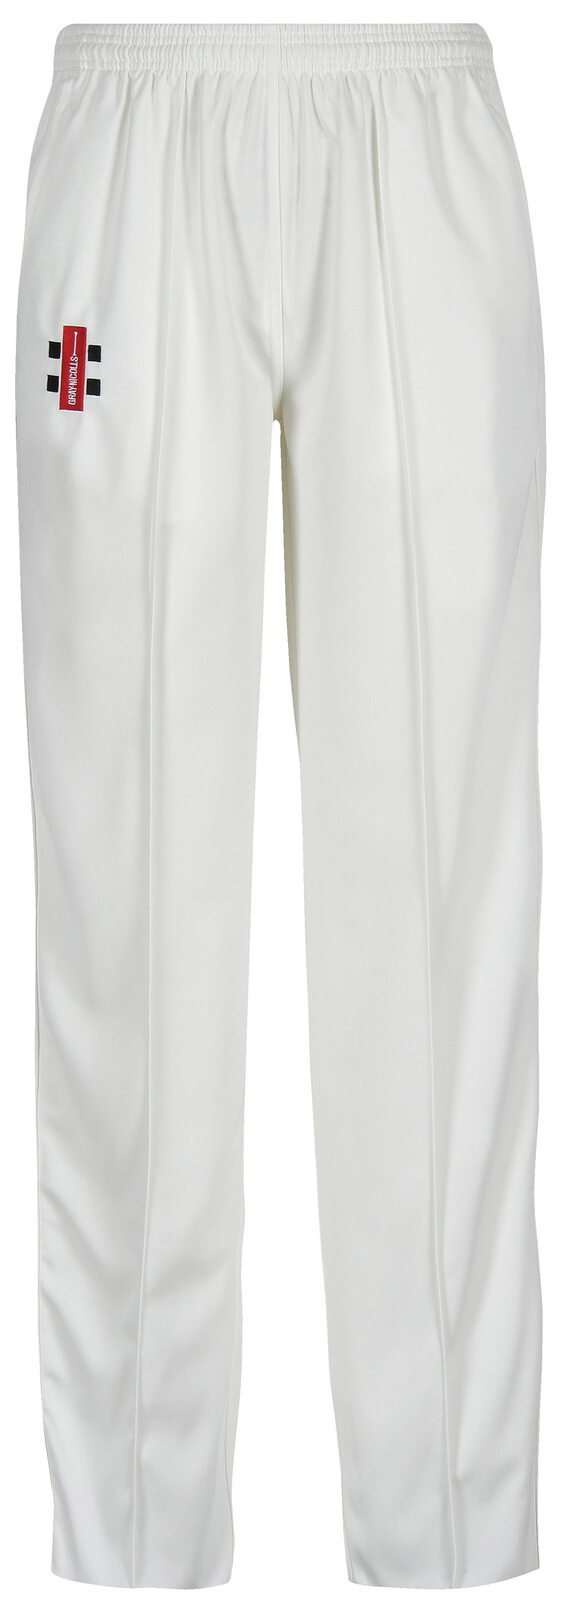 Gray Nicolls Ladies Matrix Pants White